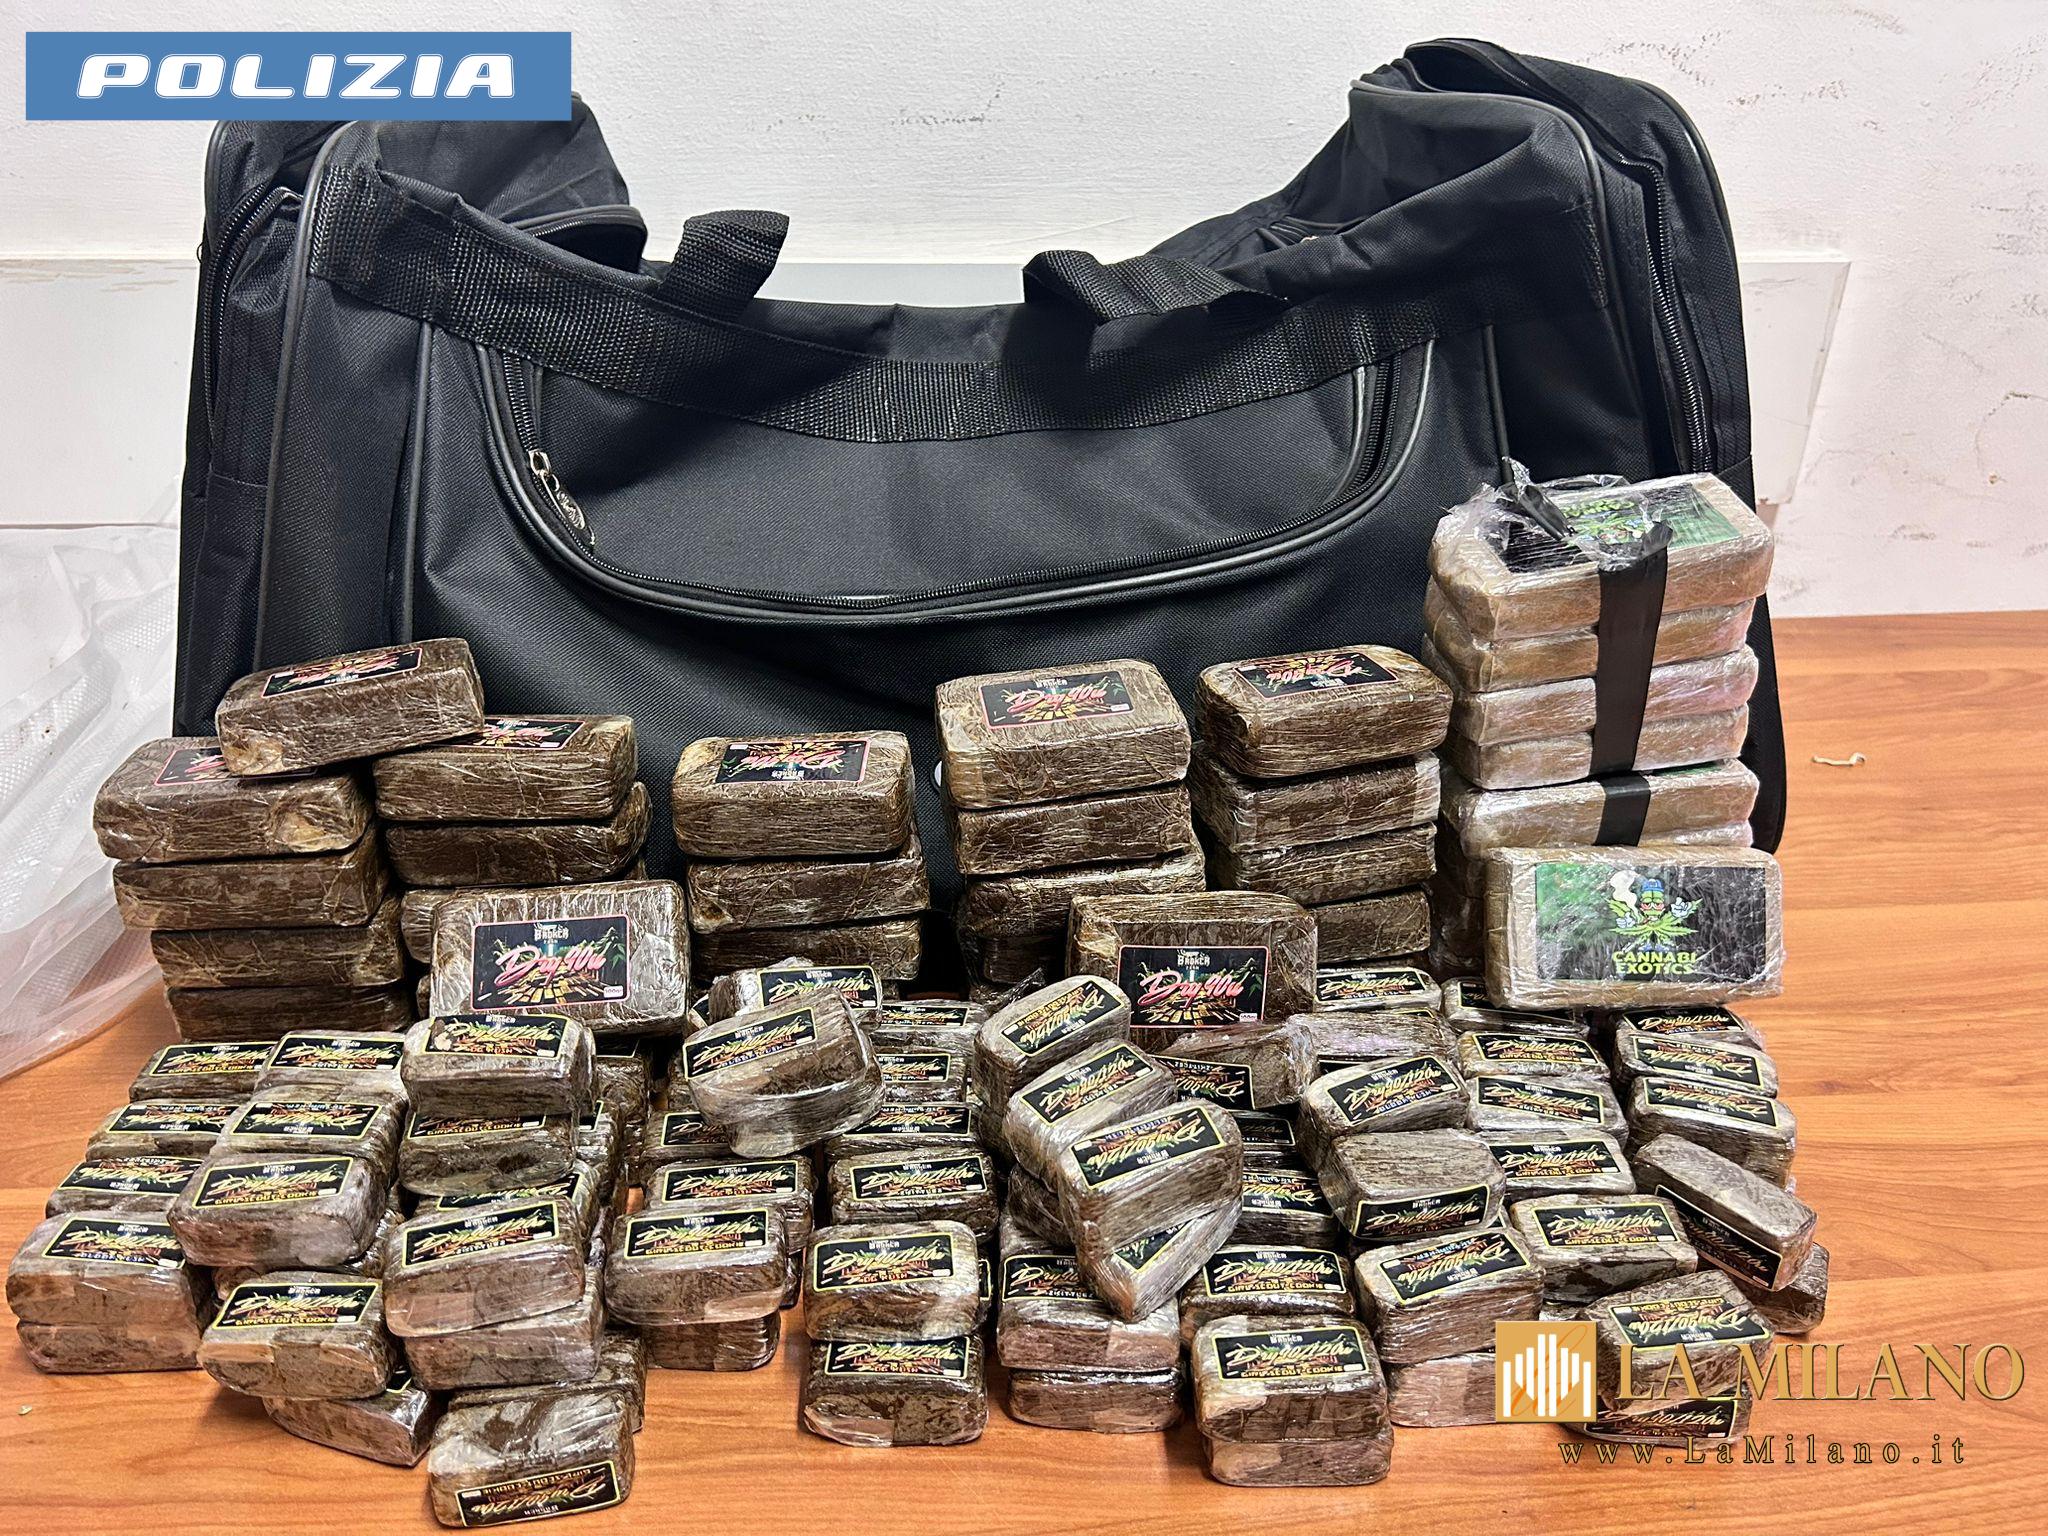 Roma, sequestrati 8 kg di sostanze stupefacenti e 1285 euro in contanti: arrestate 5 persone. 